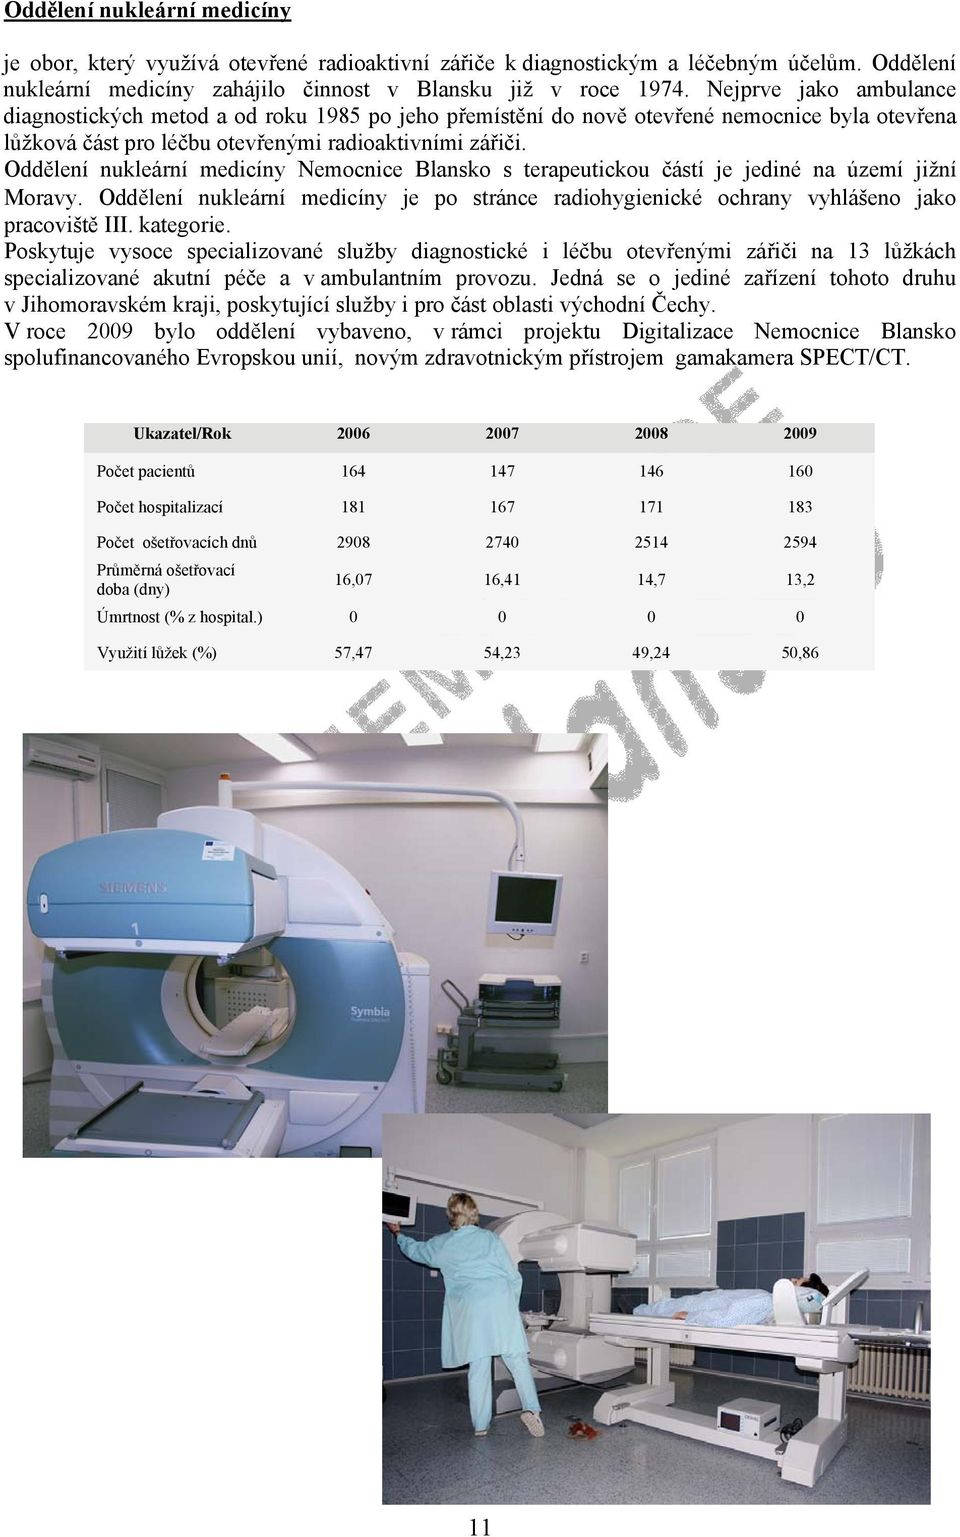 Oddělení nukleární medicíny Nemocnice Blansko s terapeutickou částí je jediné na území jižní Moravy. Oddělení nukleární medicíny je po stránce radiohygienické ochrany vyhlášeno jako pracoviště III.